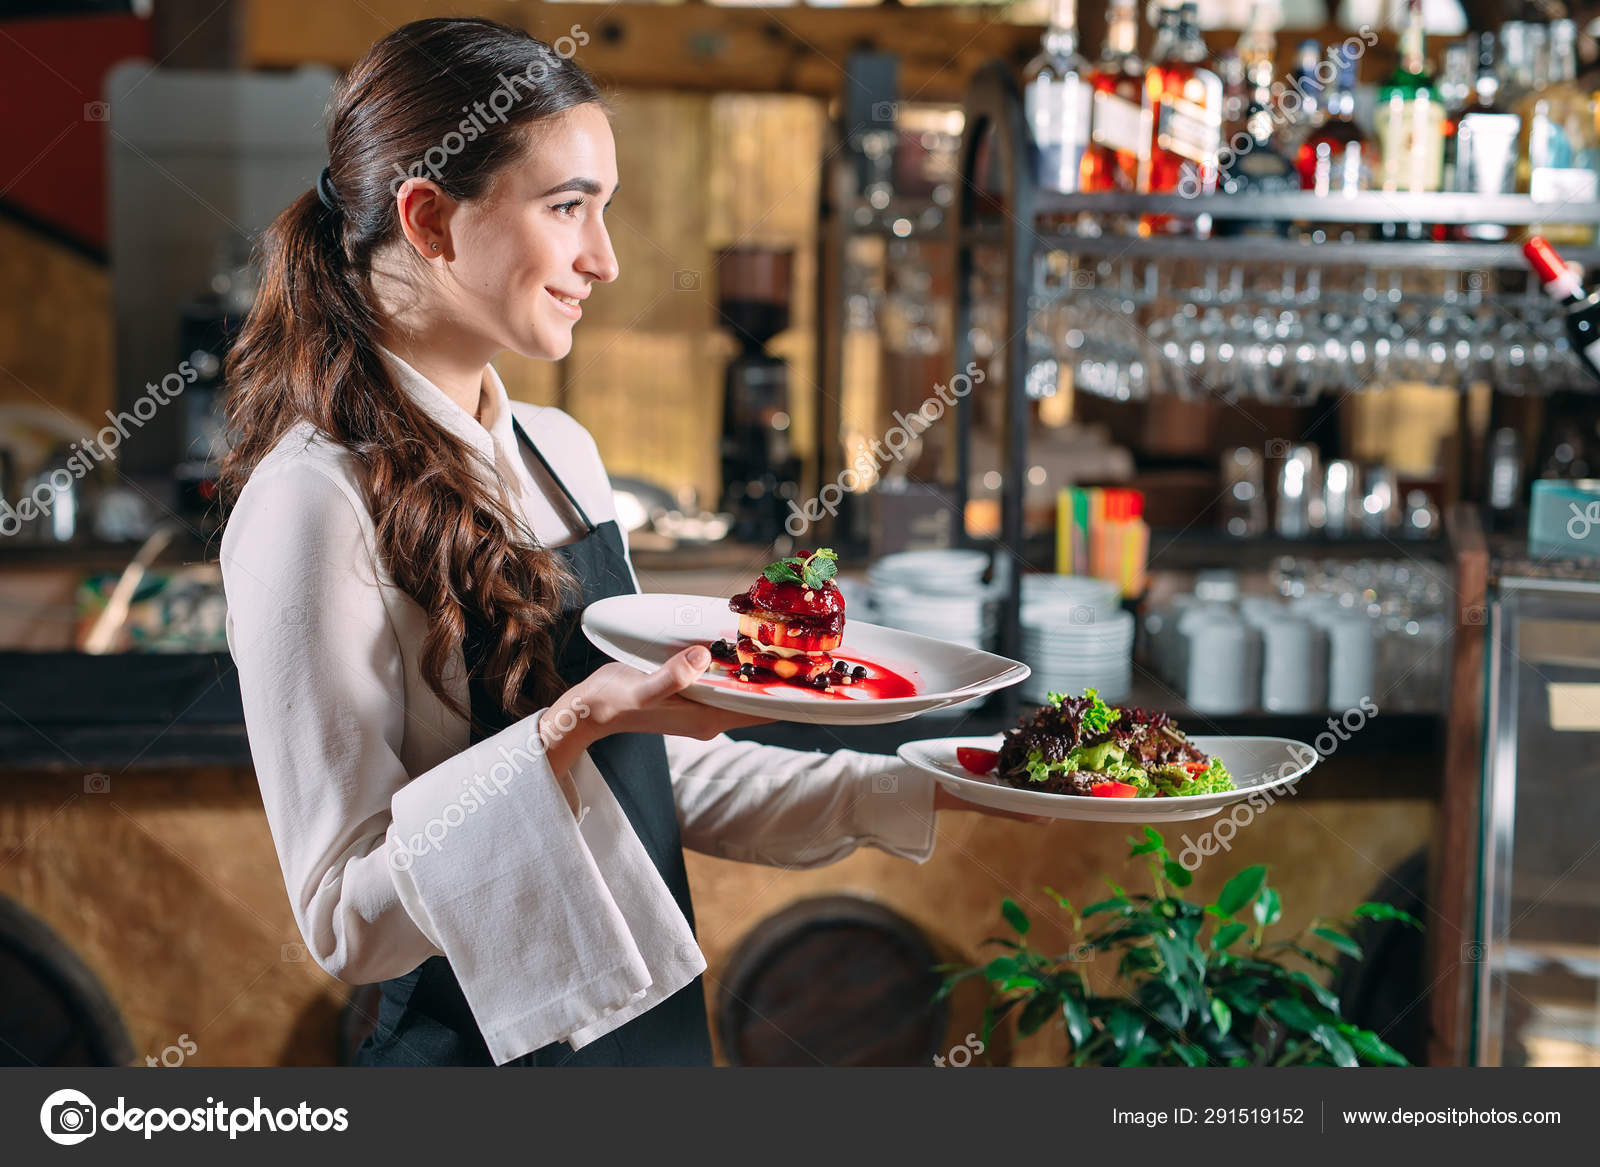 Как познакомиться с официанткой в кафе: Как познакомиться с официанткой — RestoRunner